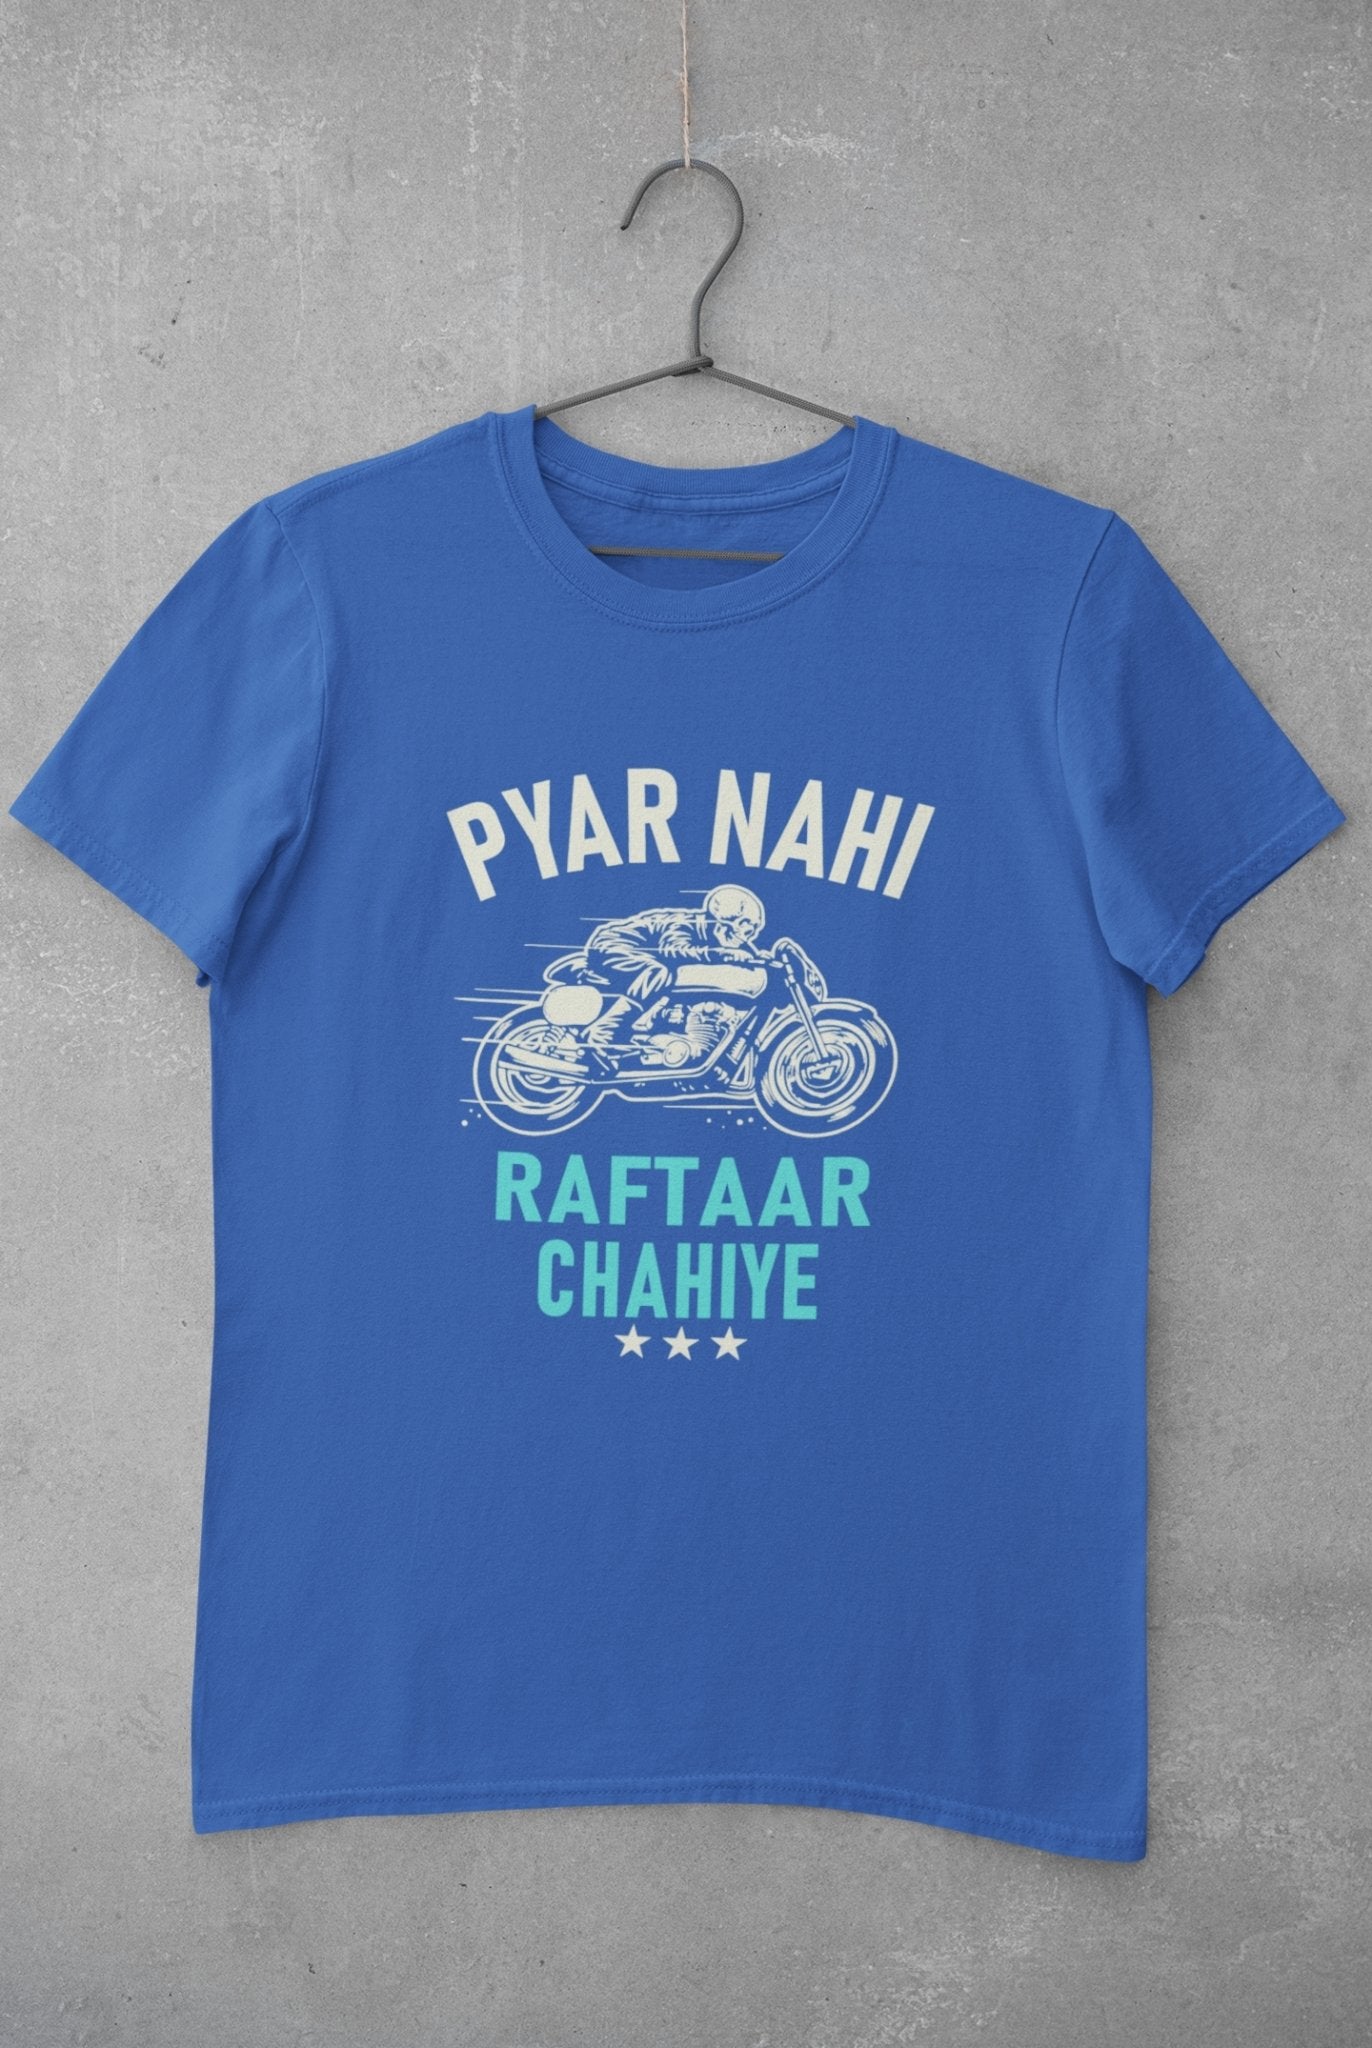 Pyaar Nahi Raftaar Chahiye Biker Mens Half Sleeves T-shirt- FunkyTeesClub - Funky Tees Club